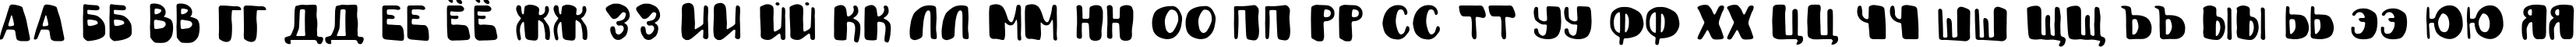 Пример написания русского алфавита шрифтом Fantazyor